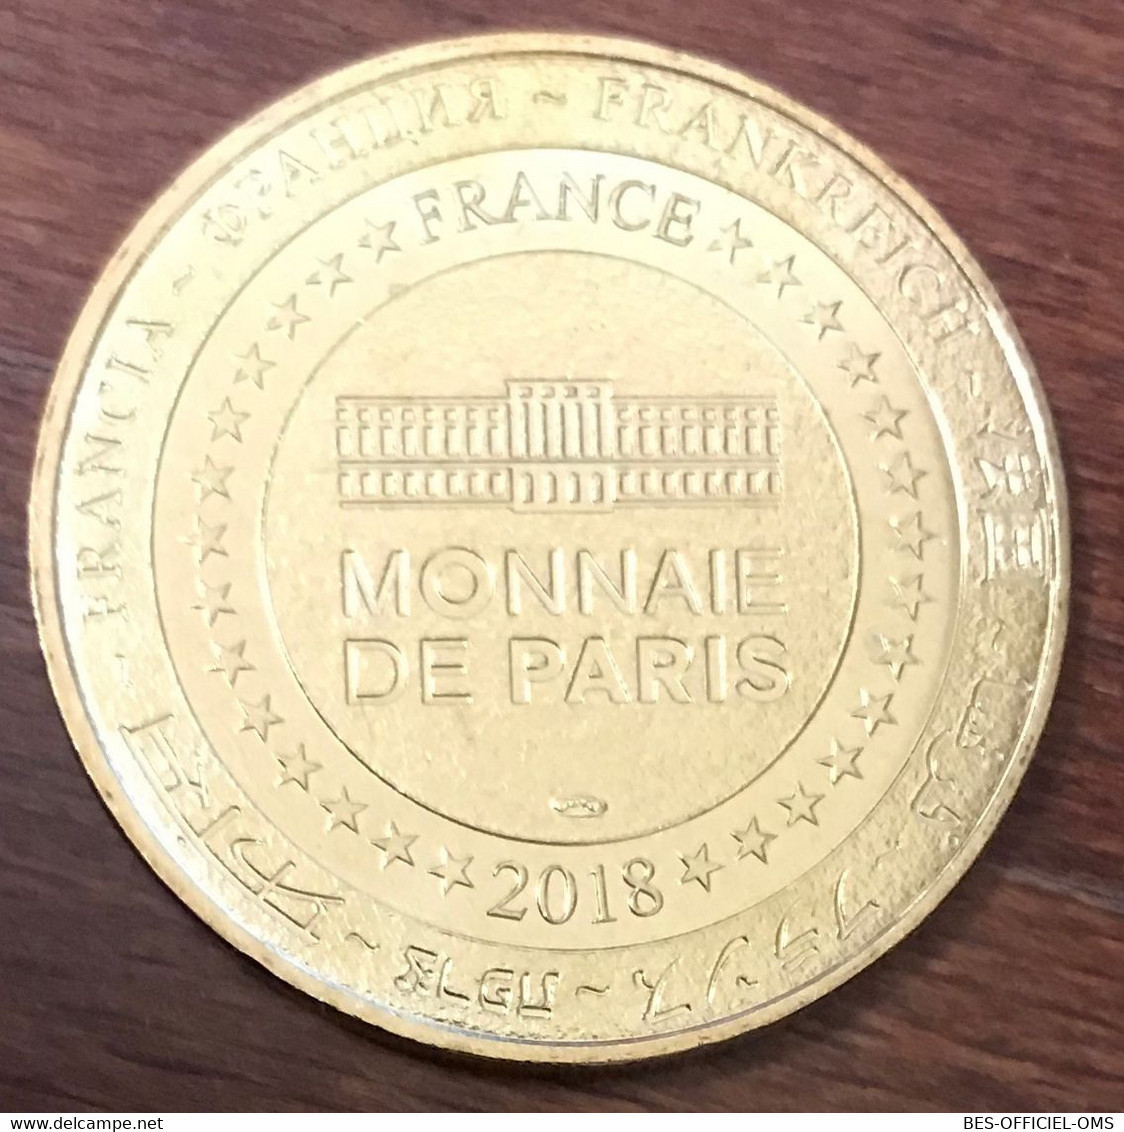 34 LA GRANDE MOTTE 50 ANS MDP 2018 MÉDAILLE SOUVENIR MONNAIE DE PARIS JETON TOURISTIQUE TOKENS MEDALS COINS - 2018